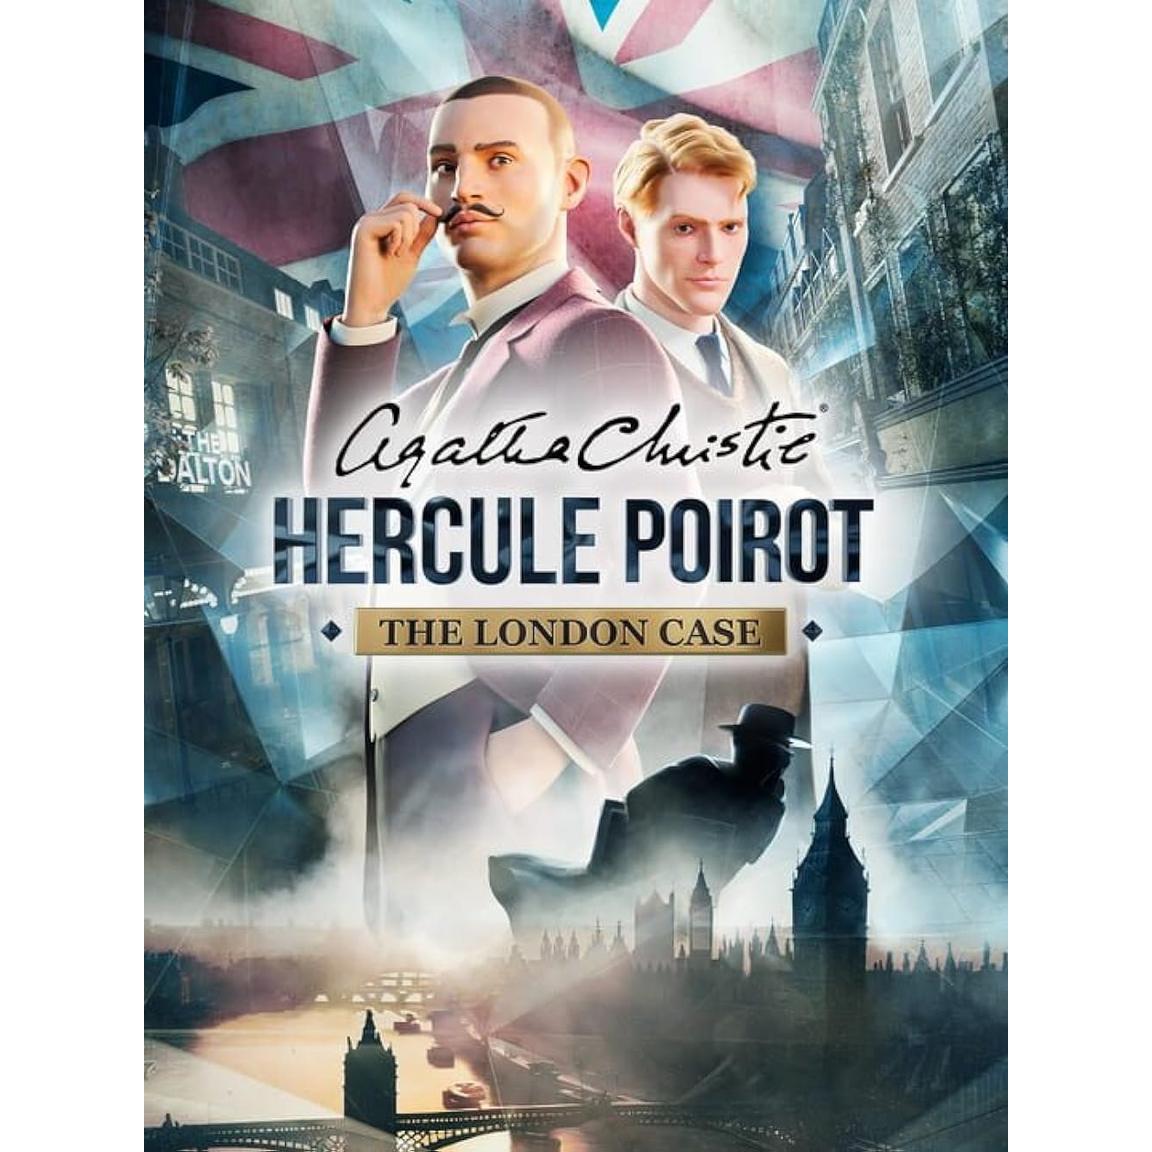 Agatha Christie - Hercule Poirot: The London Case - PC Steam